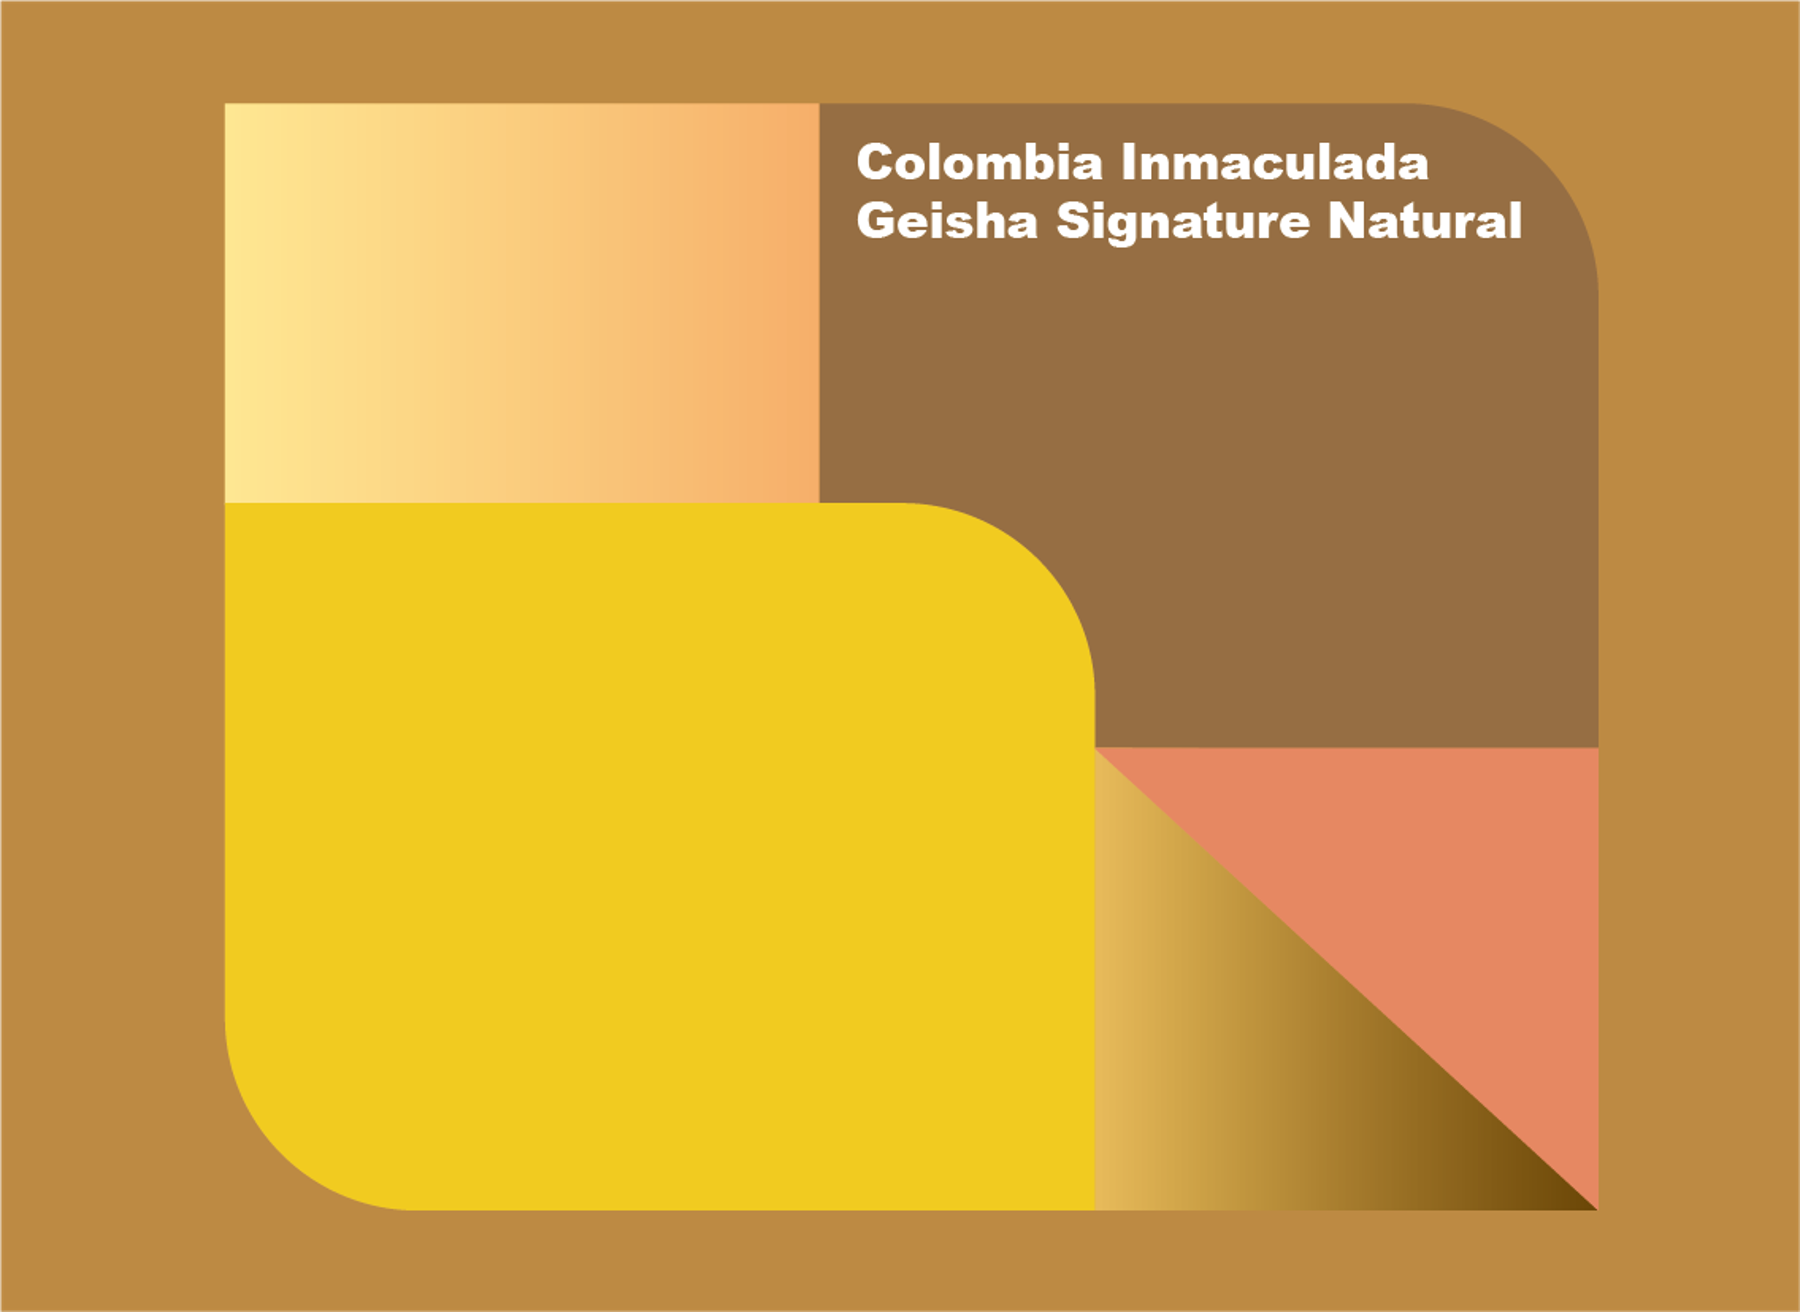 콜롬비아 인마쿨라다 게이샤 시그니처  Inmaculada Geisha Signature  (Natural) 200g